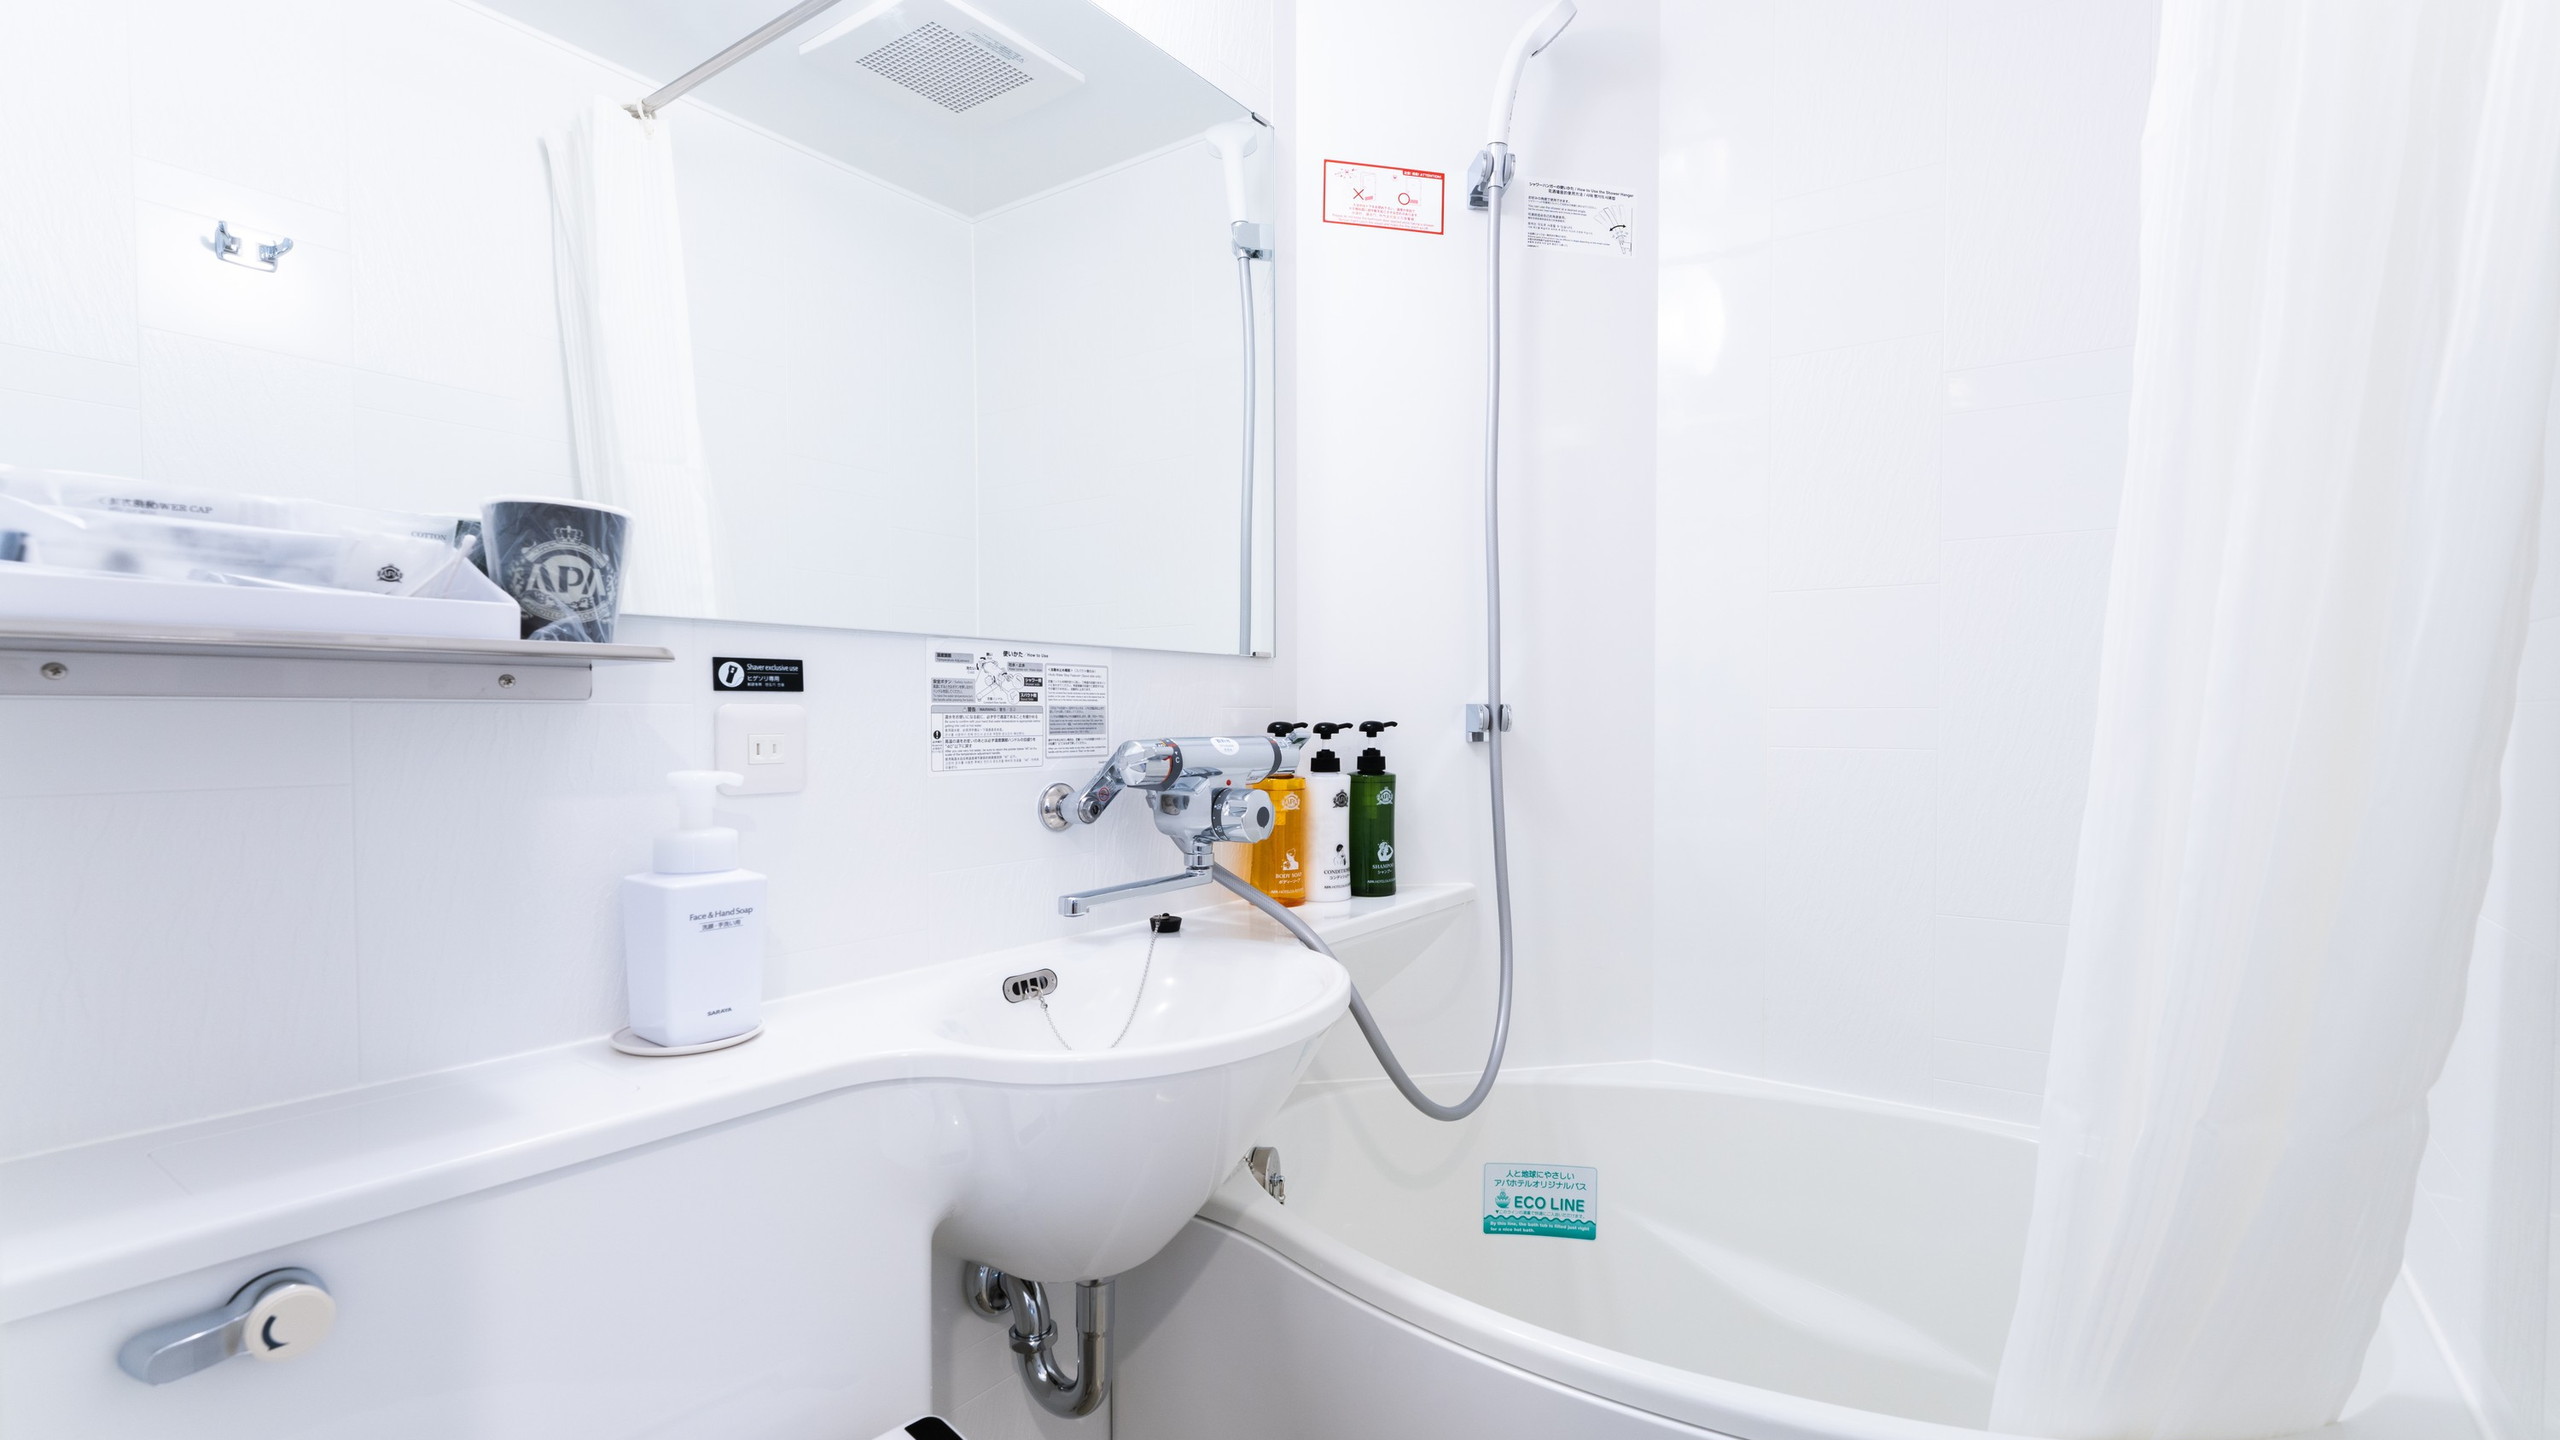 通常の浴槽より約20%の節水かつゆったり入浴できるアパホテルオリジナルユニットバス